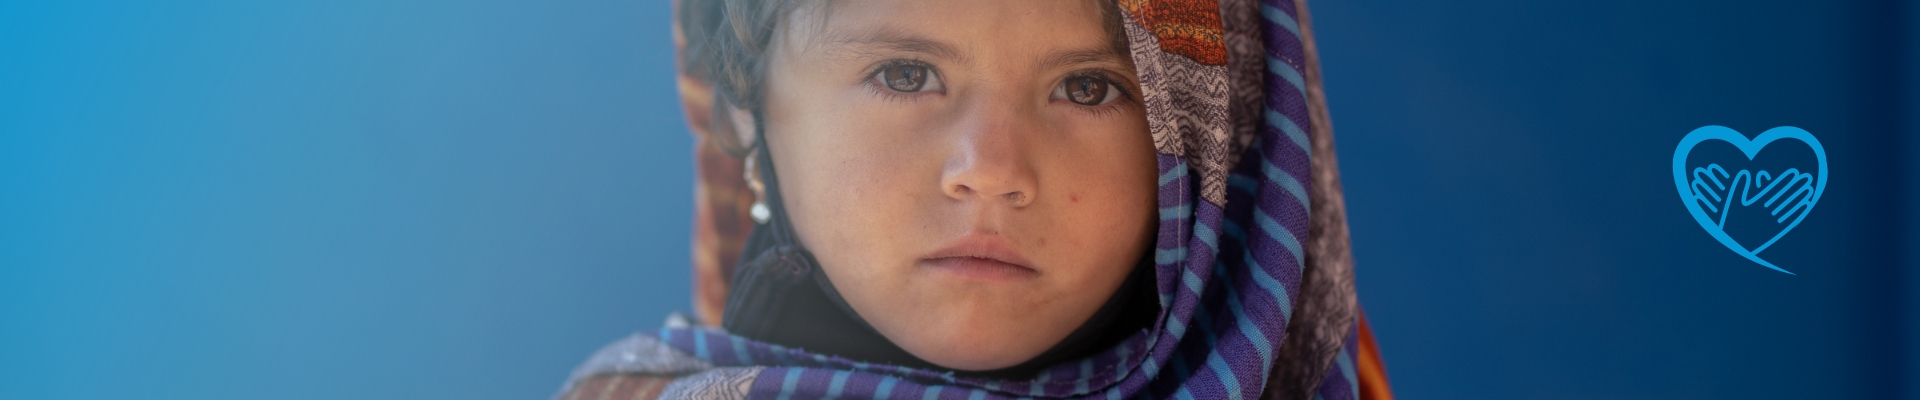 Junges afghanisches Mädchen schaut traurig in die Kamera- UN Women hilft Frauen in Afghanistan